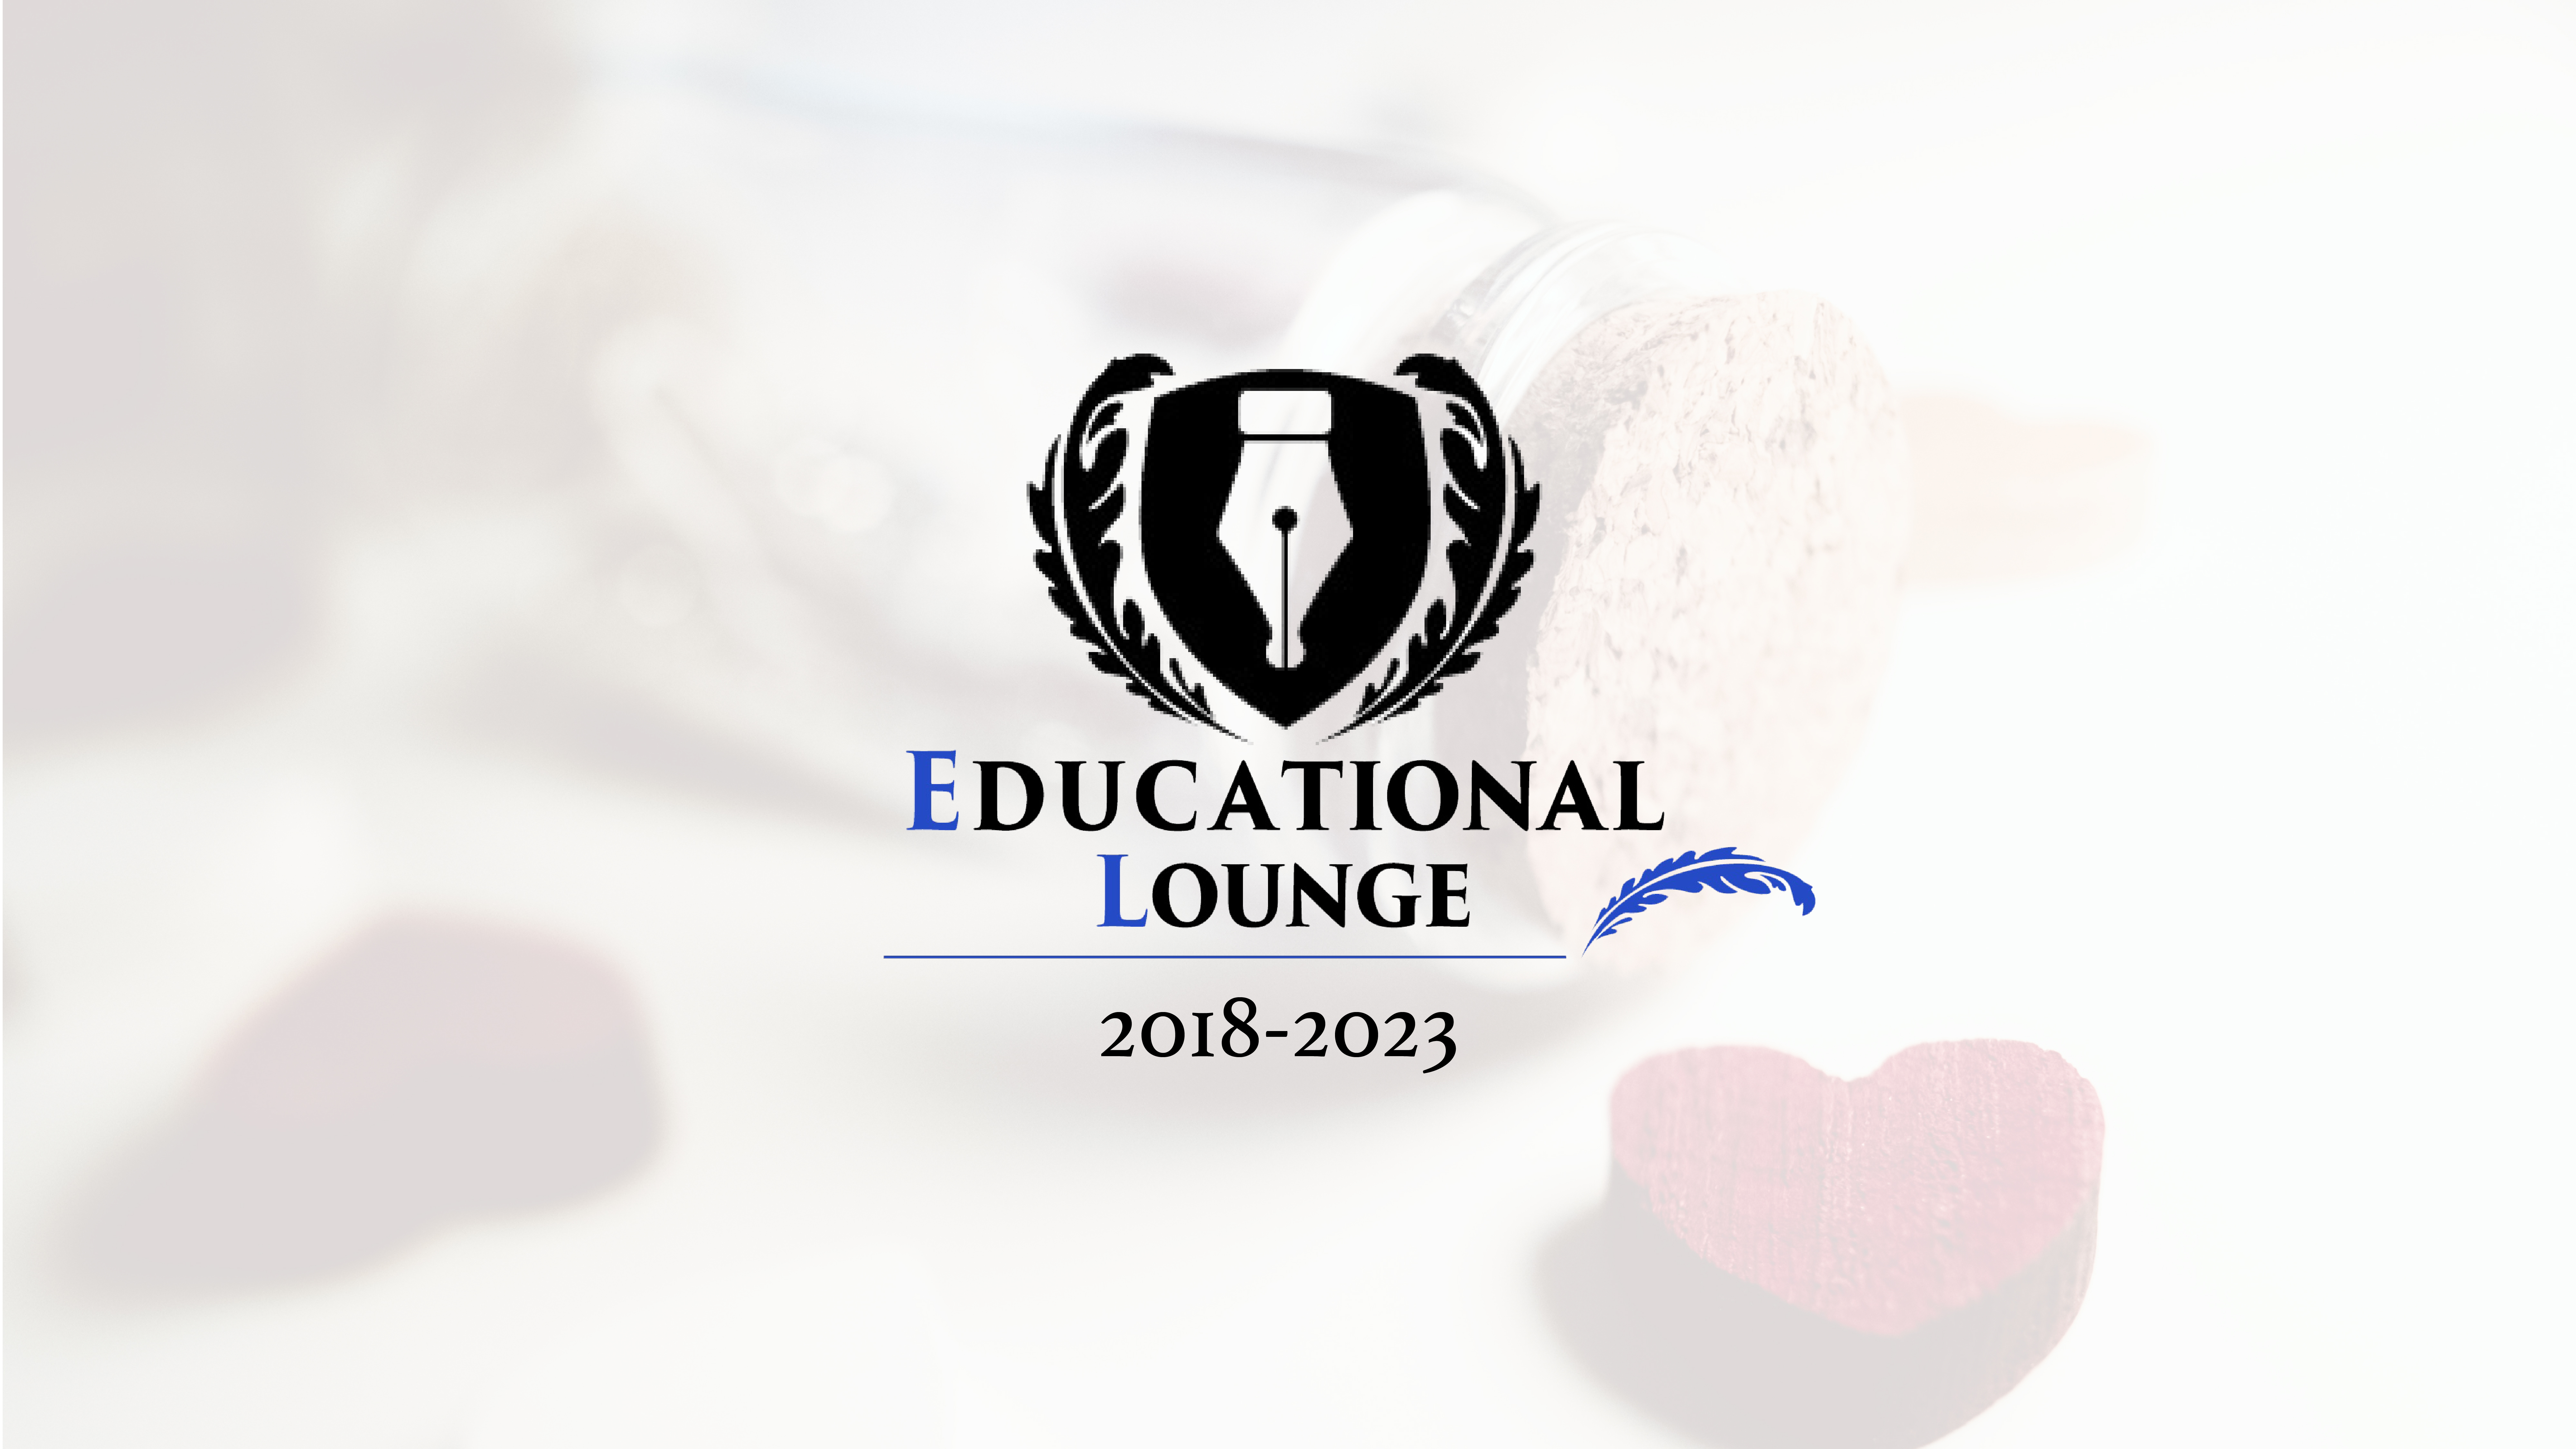 Educational Loungeはおかげさまで5周年を迎えました